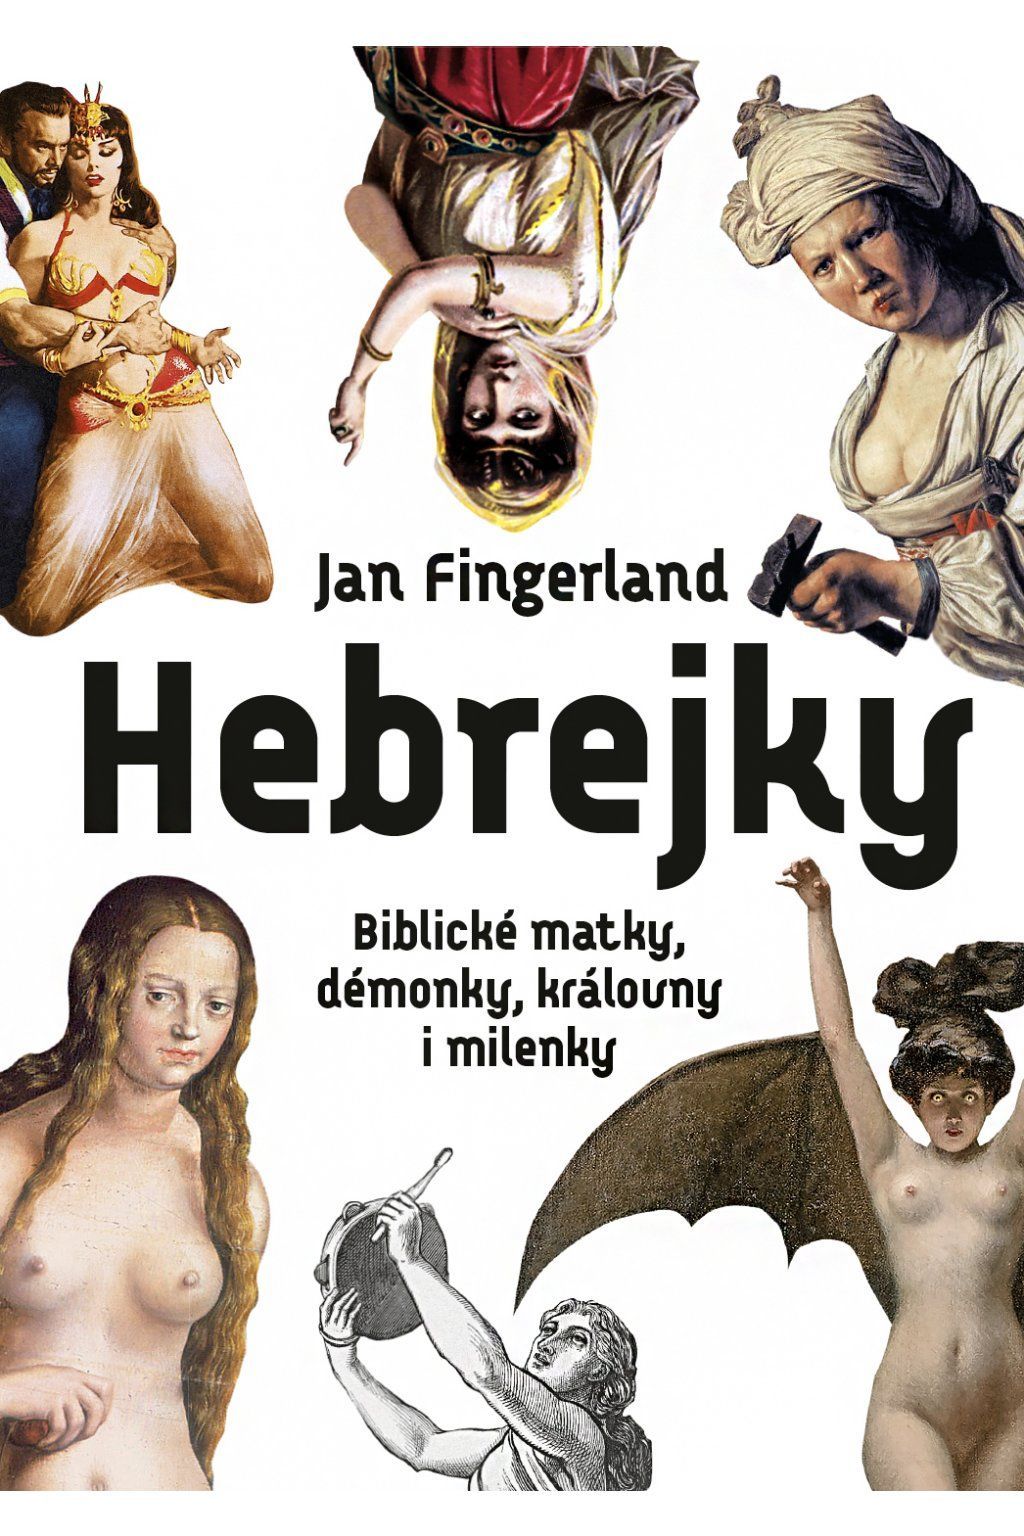 Jan Fingerland: Hebrejky